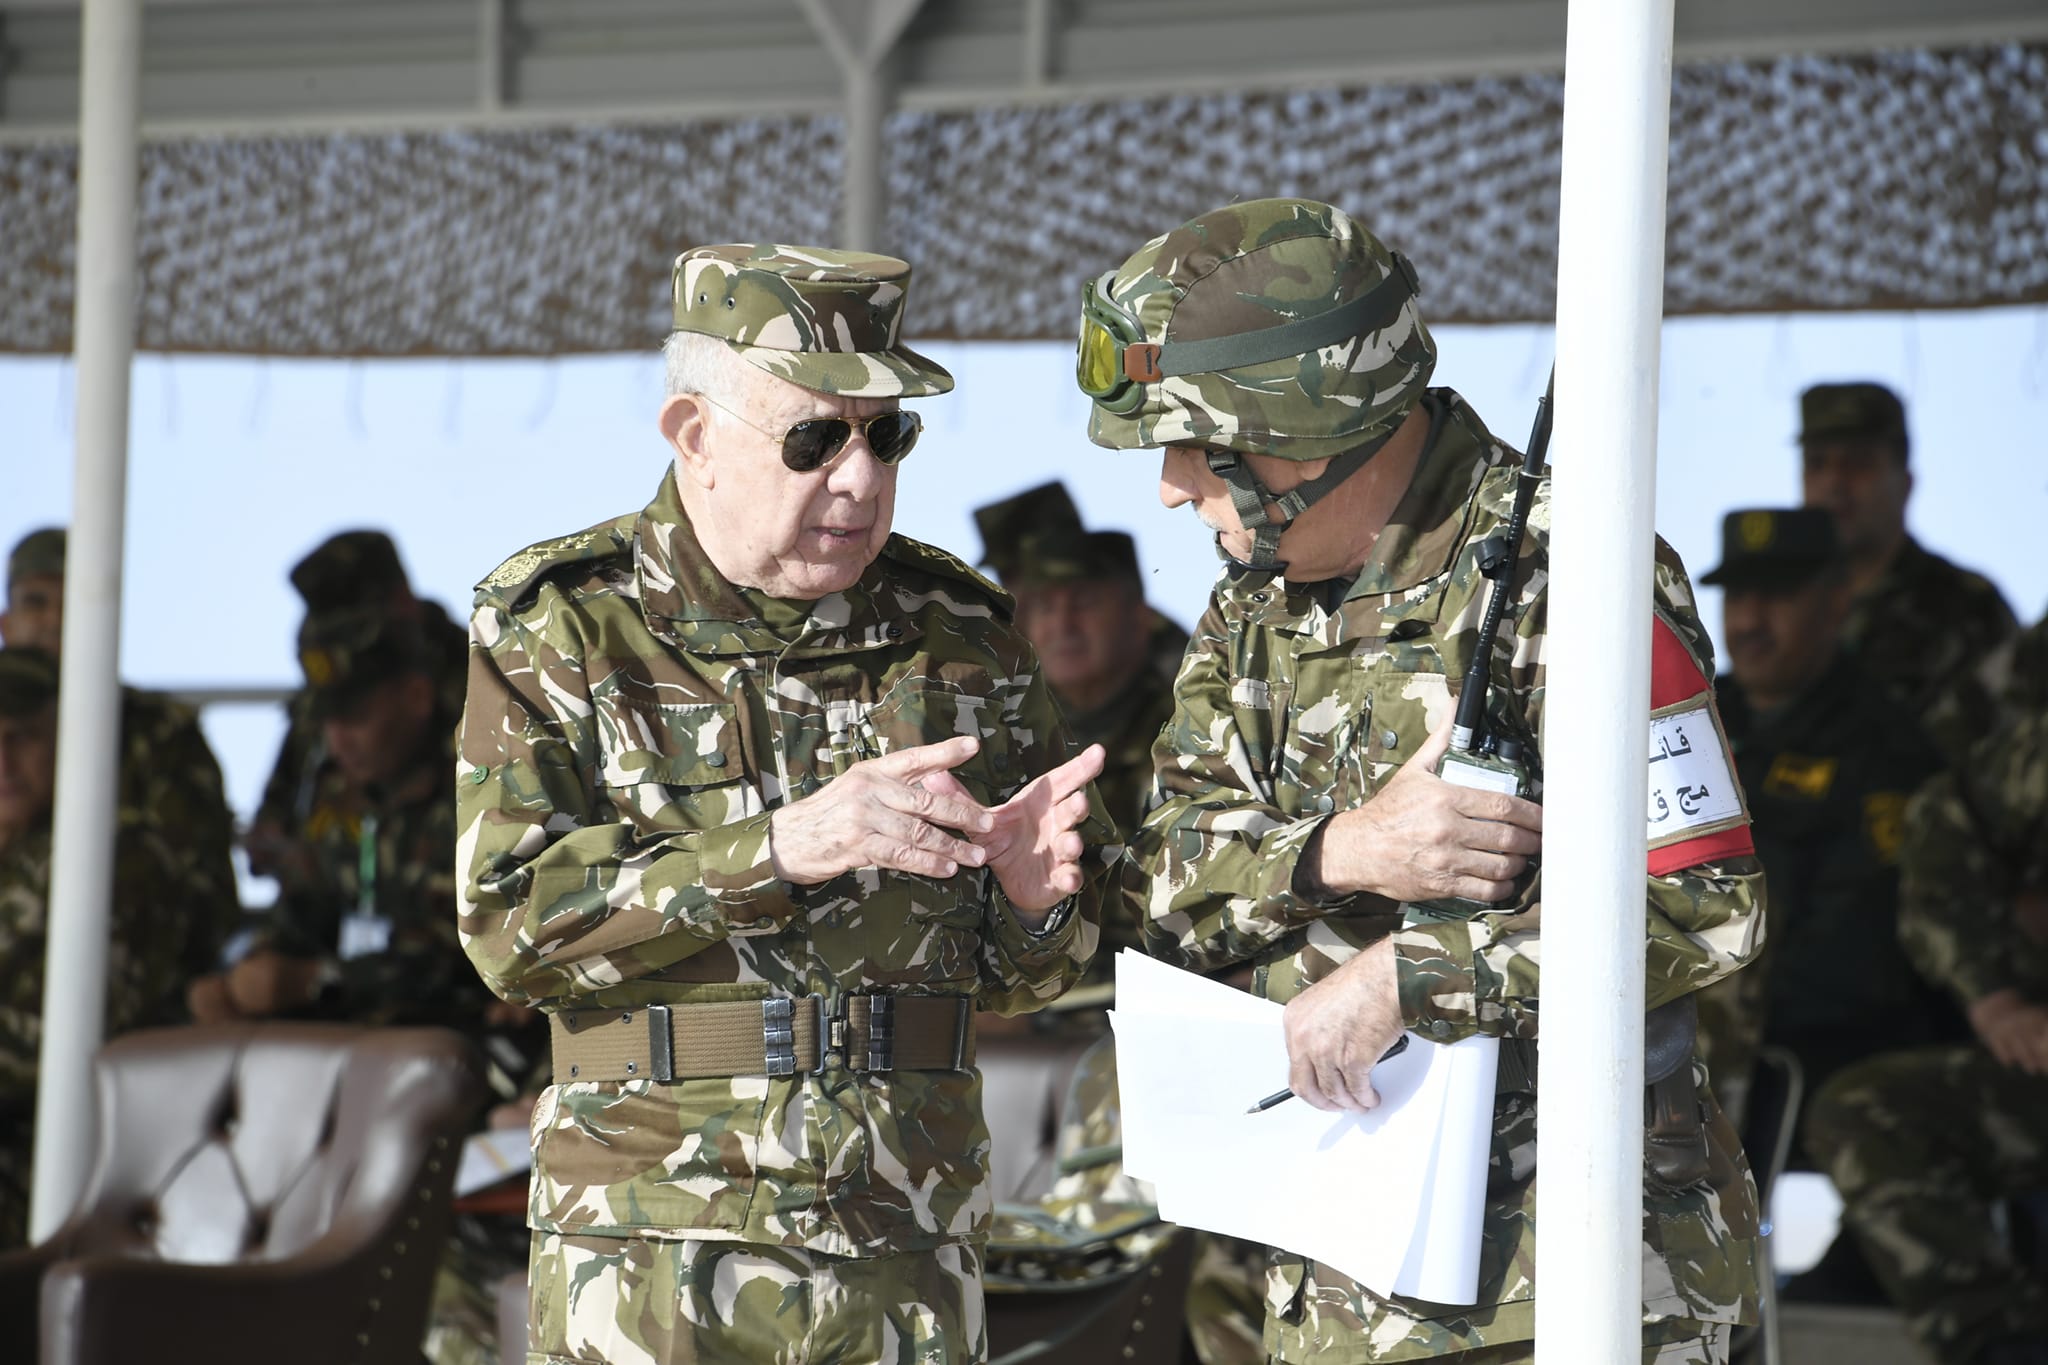 الفريق أول شنقريحة يشرف على تنفيذ تمرين بالذخيرة الحية بالناحية العسكرية الثالثة - الجزائر